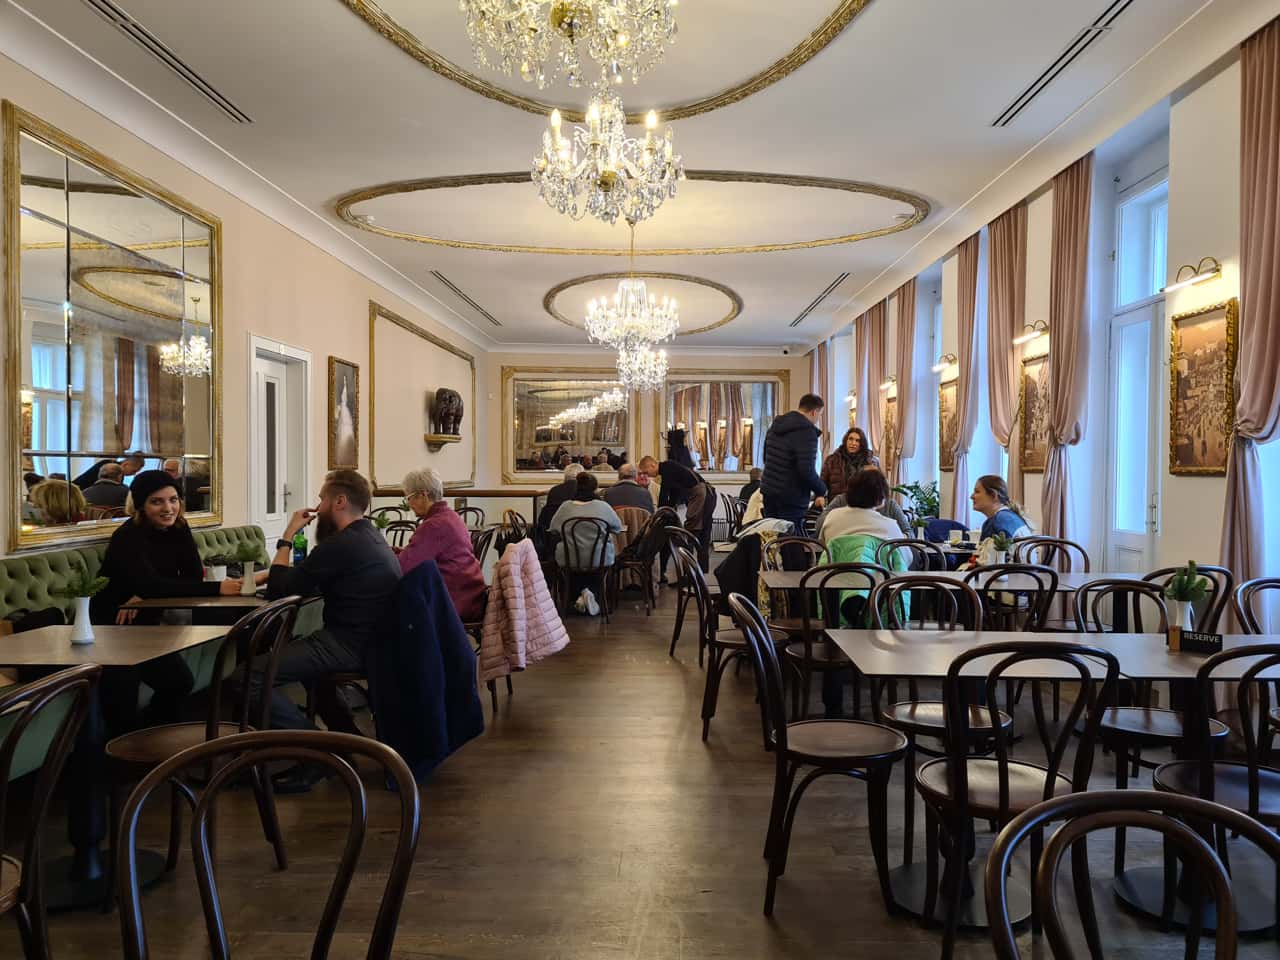 Das Café "Elefant" zählt zu den luxuriösesten Kaffeehäusern in Karlsbad, Tschechien